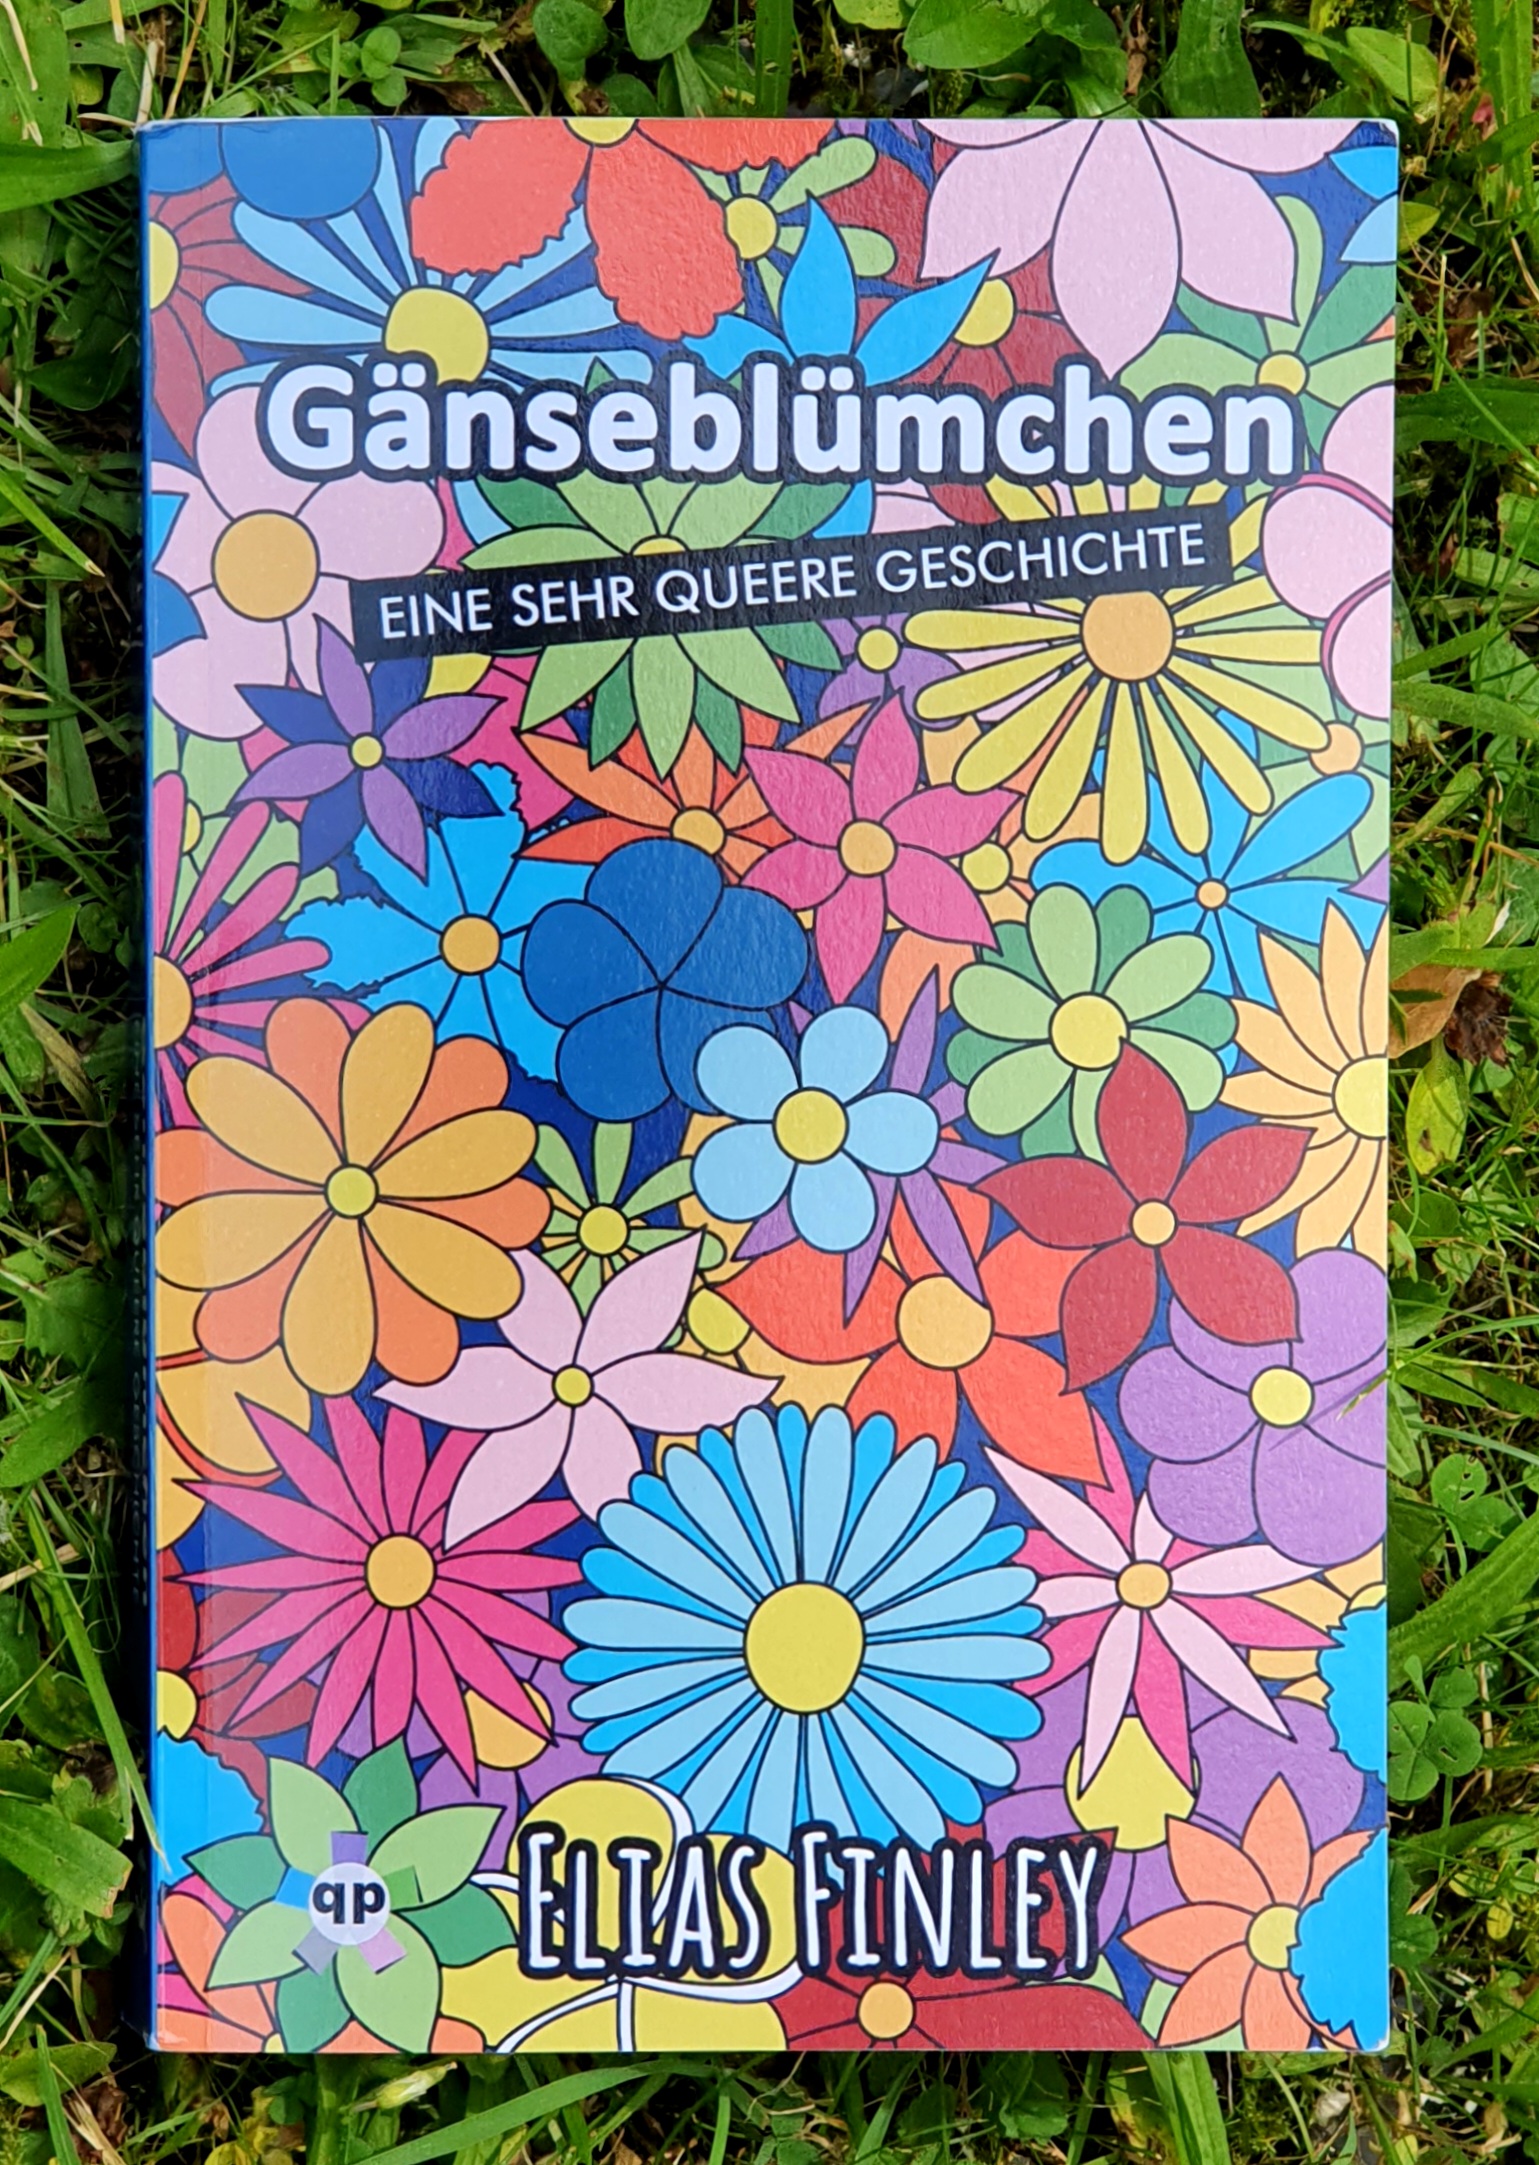 Foto eines Buches im Gras. Auf dem Umschlag ganz viele bunte gezeichnete Blumen. Text: Gänseblümchen - eine sehr queere Geschichte, qp Verlag, Elias Finley.